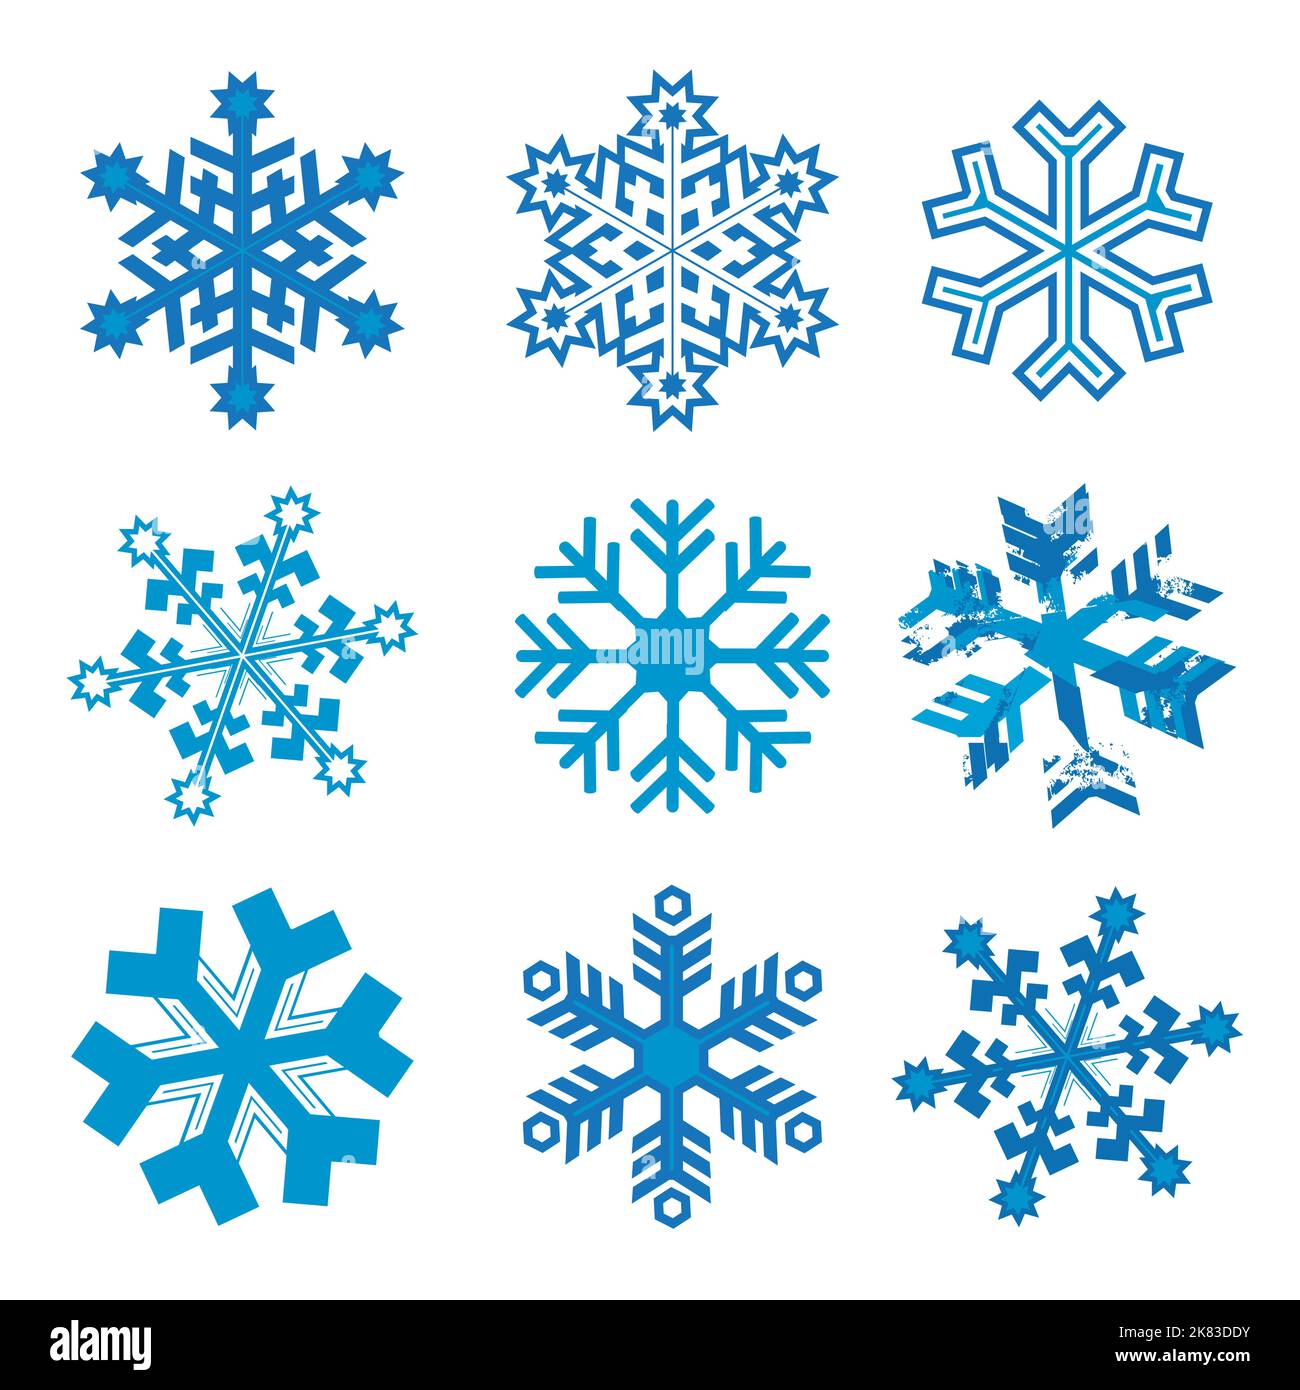 Schneeflocken, abstrakte Symbole gesetzt. Illustration von neun blauen dekorativen Eiskristallen. Isoliert auf weißem Hintergrund. Vektor verfügbar. Stock Vektor